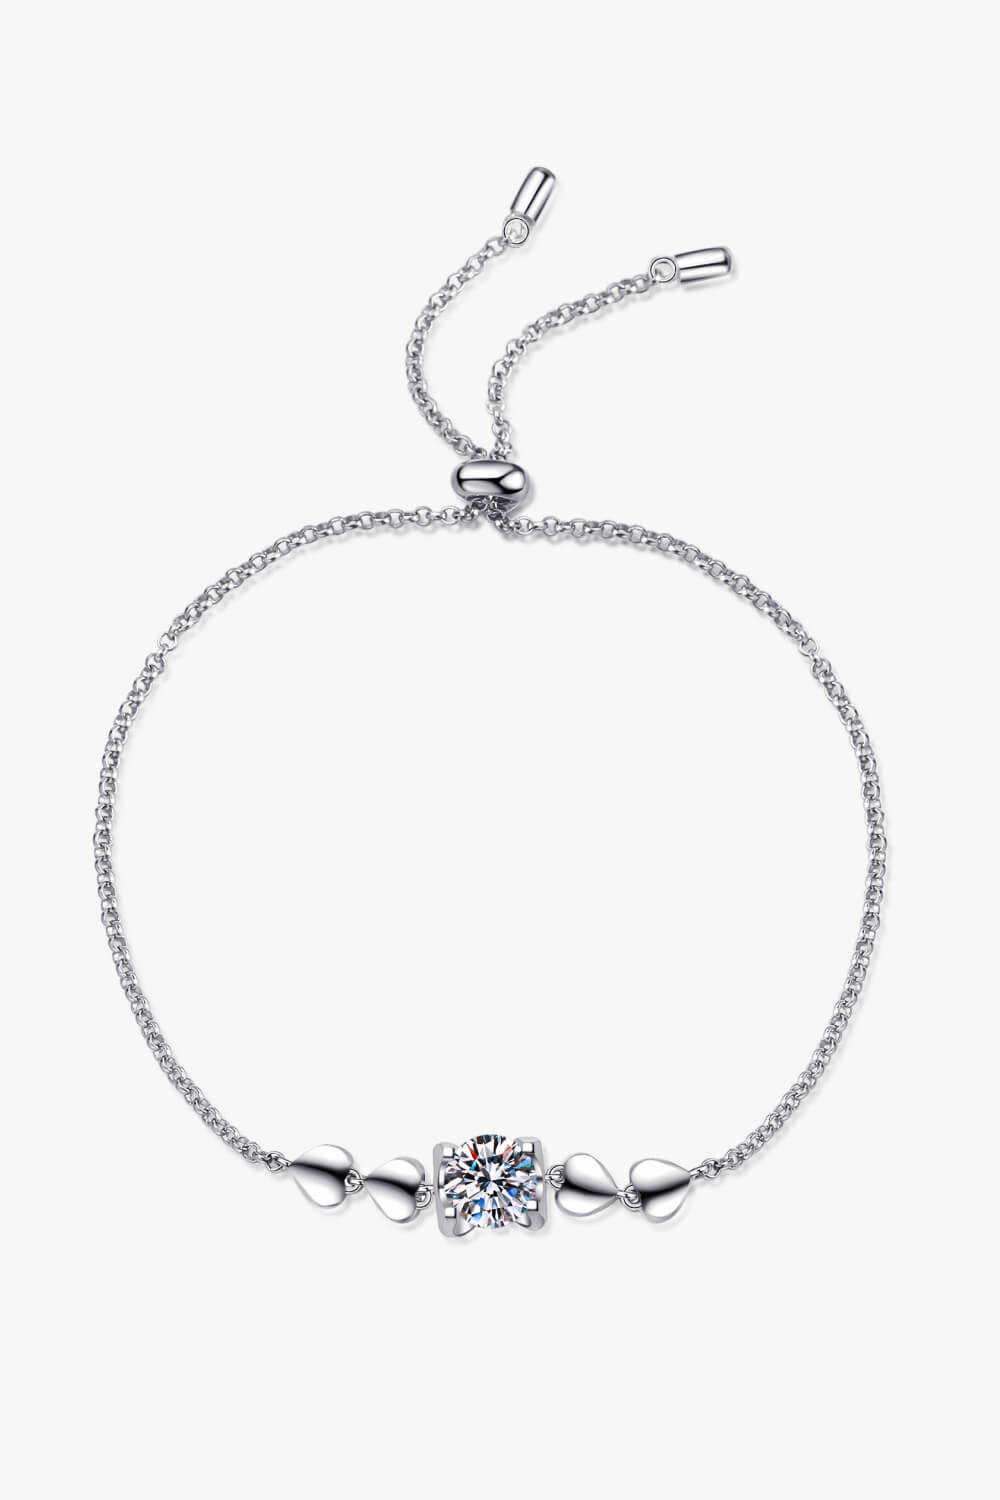 1 Carat Moissanite Heart Bracelet - Silver / One Size - Women’s Jewelry - Bracelets - 2 - 2024